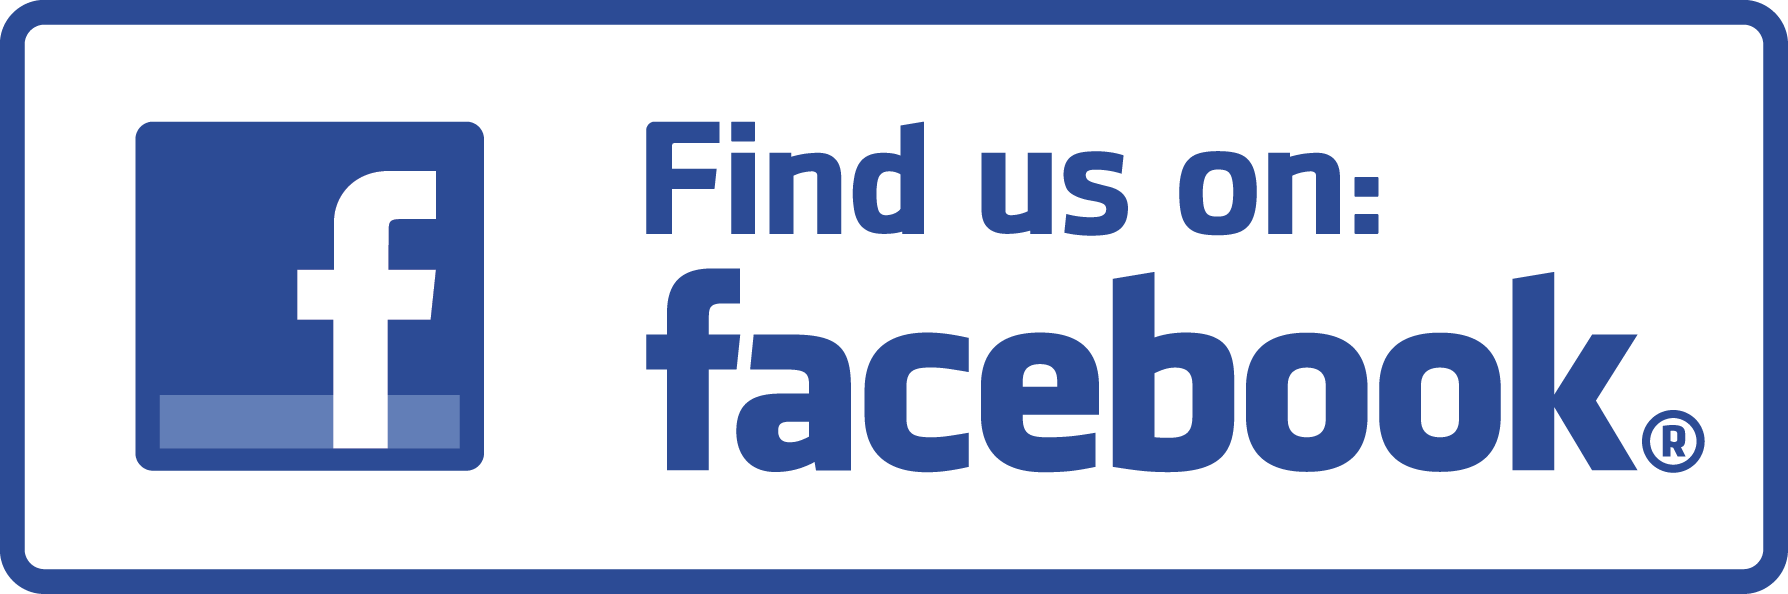 Find Us On Facebook Official Logo - facebook logo for flyer - Hobit.fullring.co